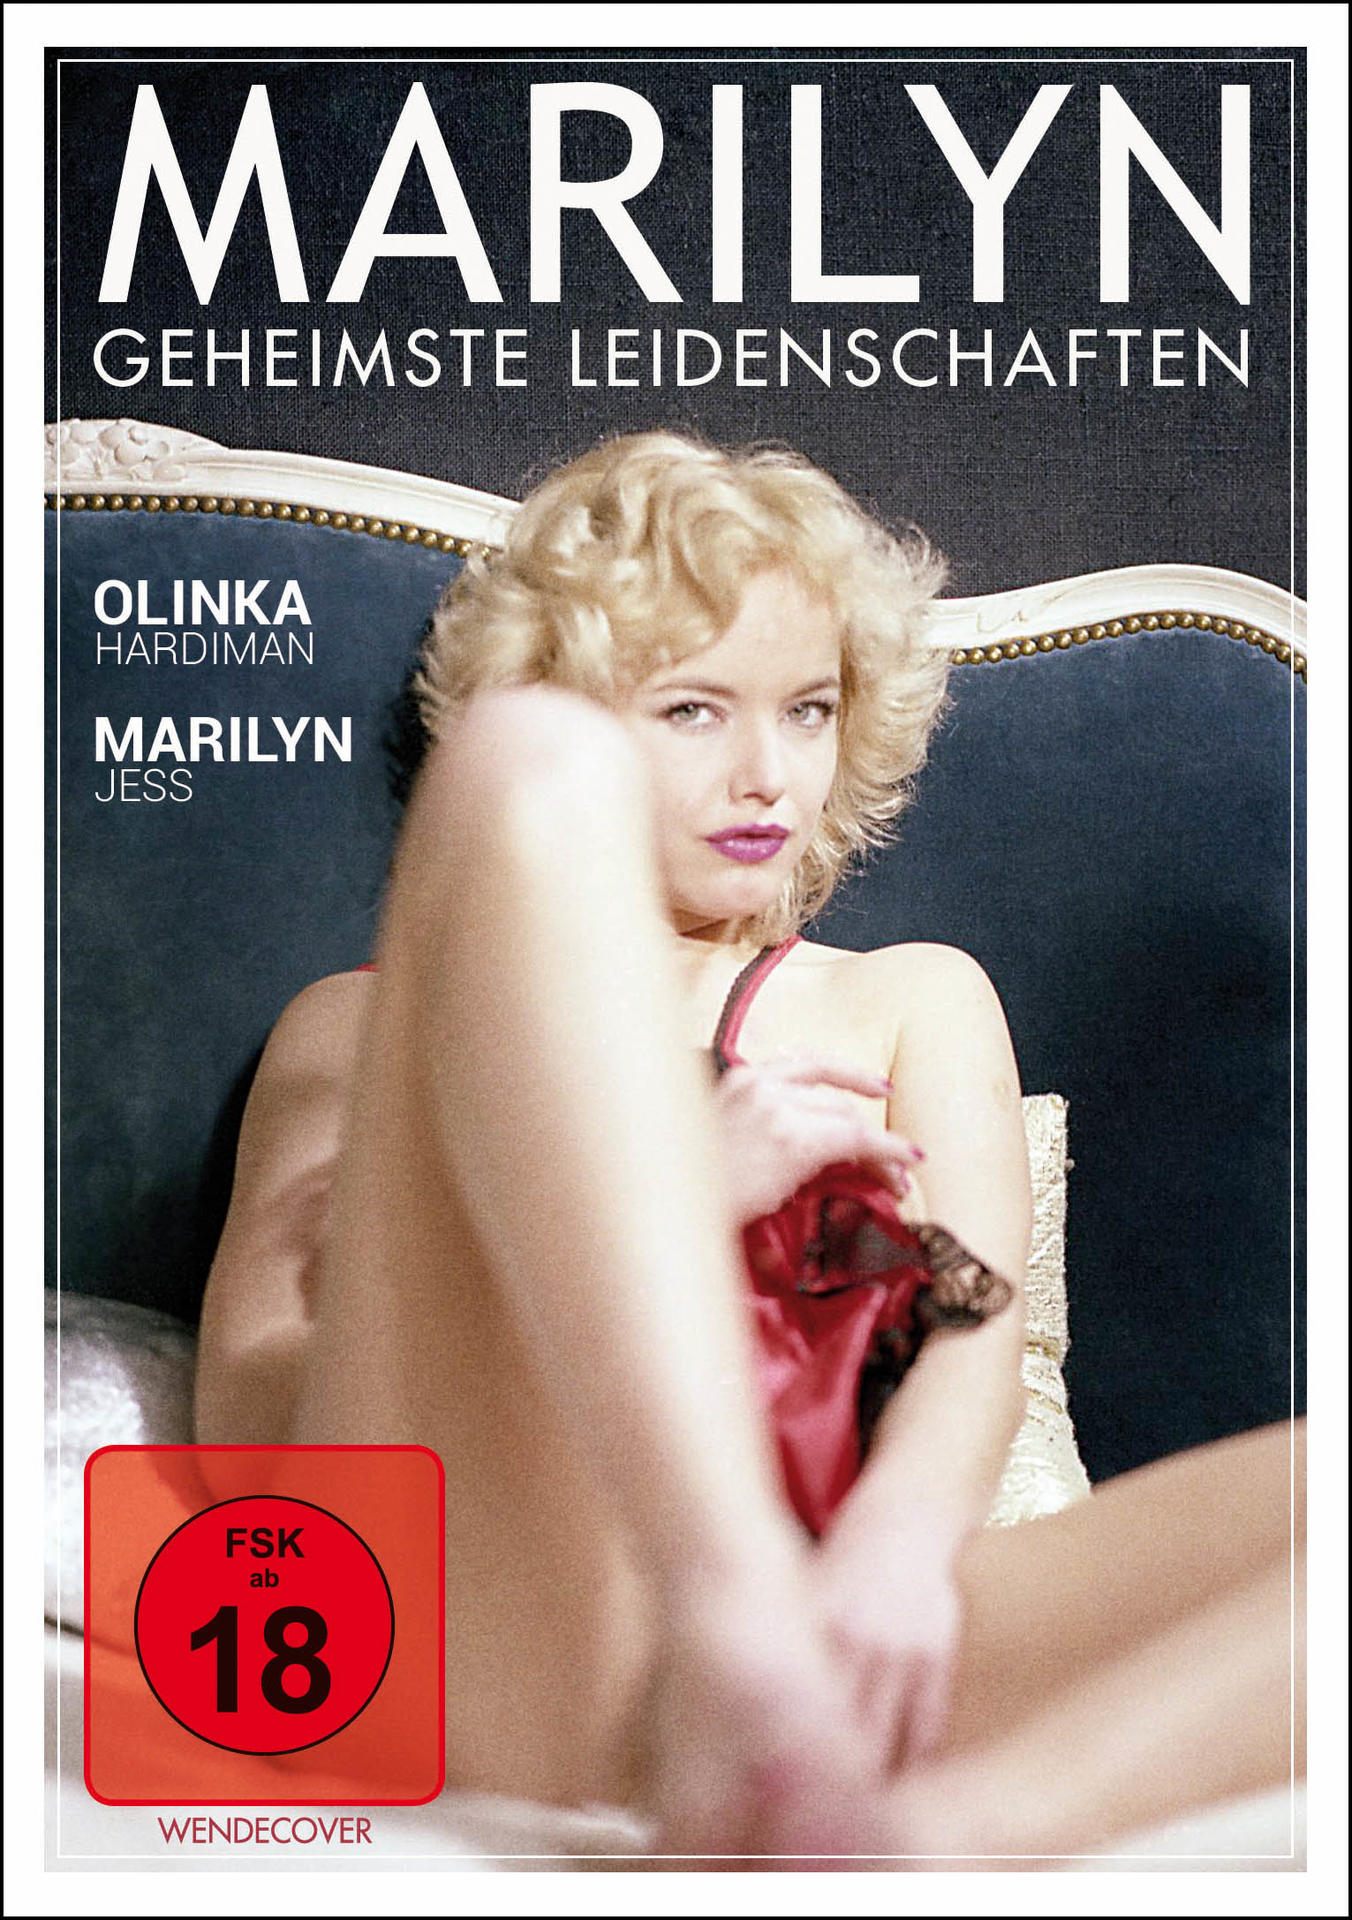 Leidenschaften Geheimste Marilyn DVD -